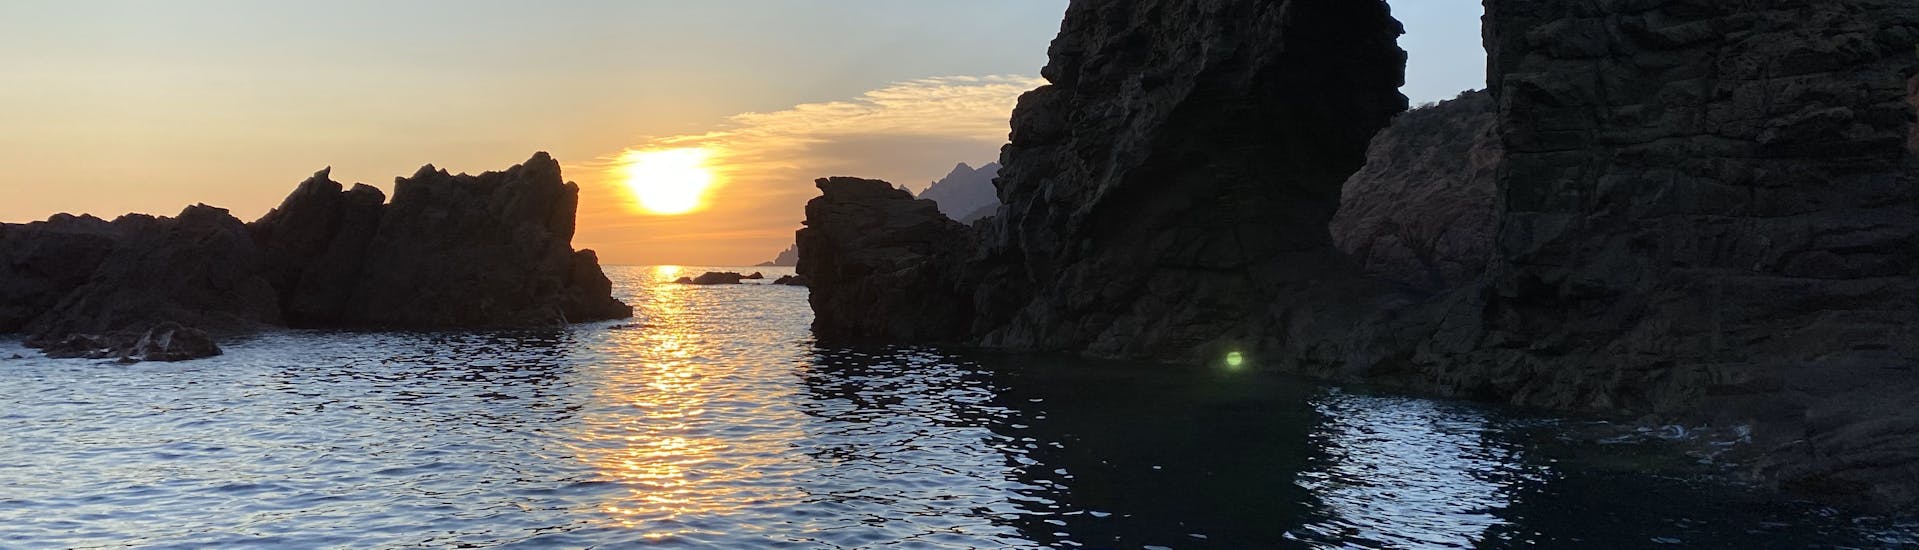 Gita privata in barca da Porto (Corsica) a Golfo di Girolata  e bagno in mare.